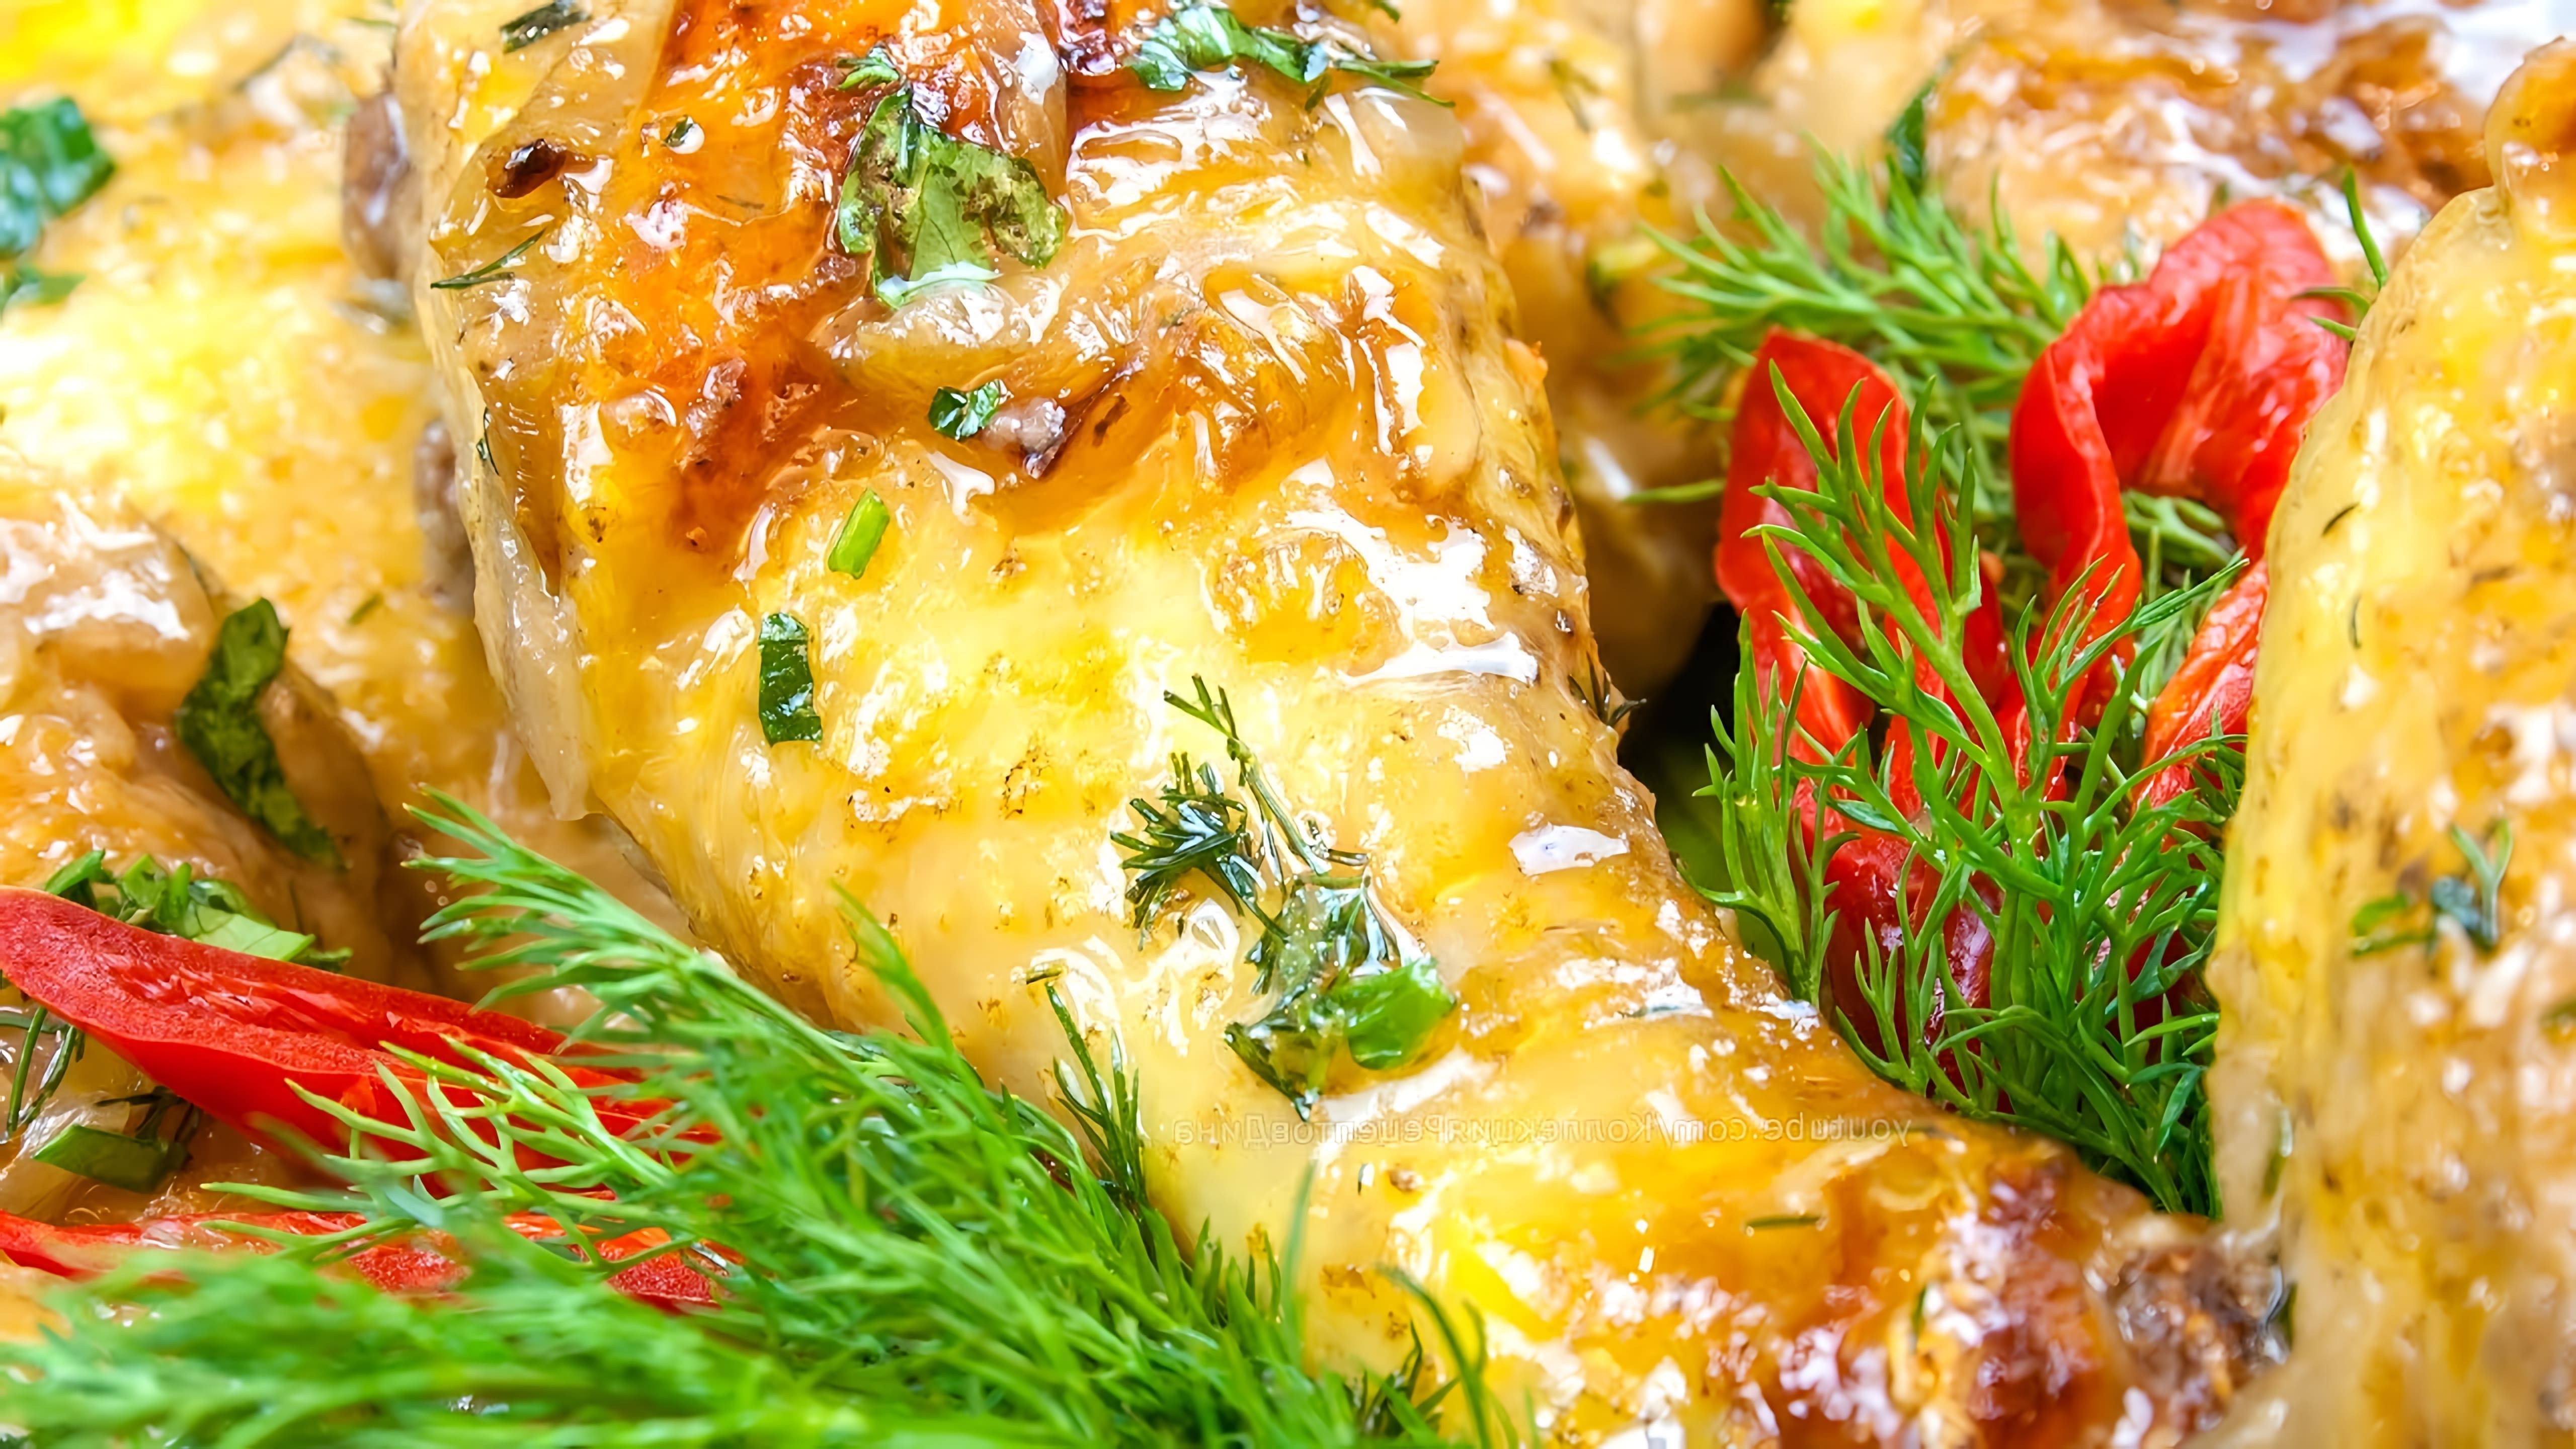 В этом видео демонстрируется рецепт приготовления куриных ножек в пикантном соусе